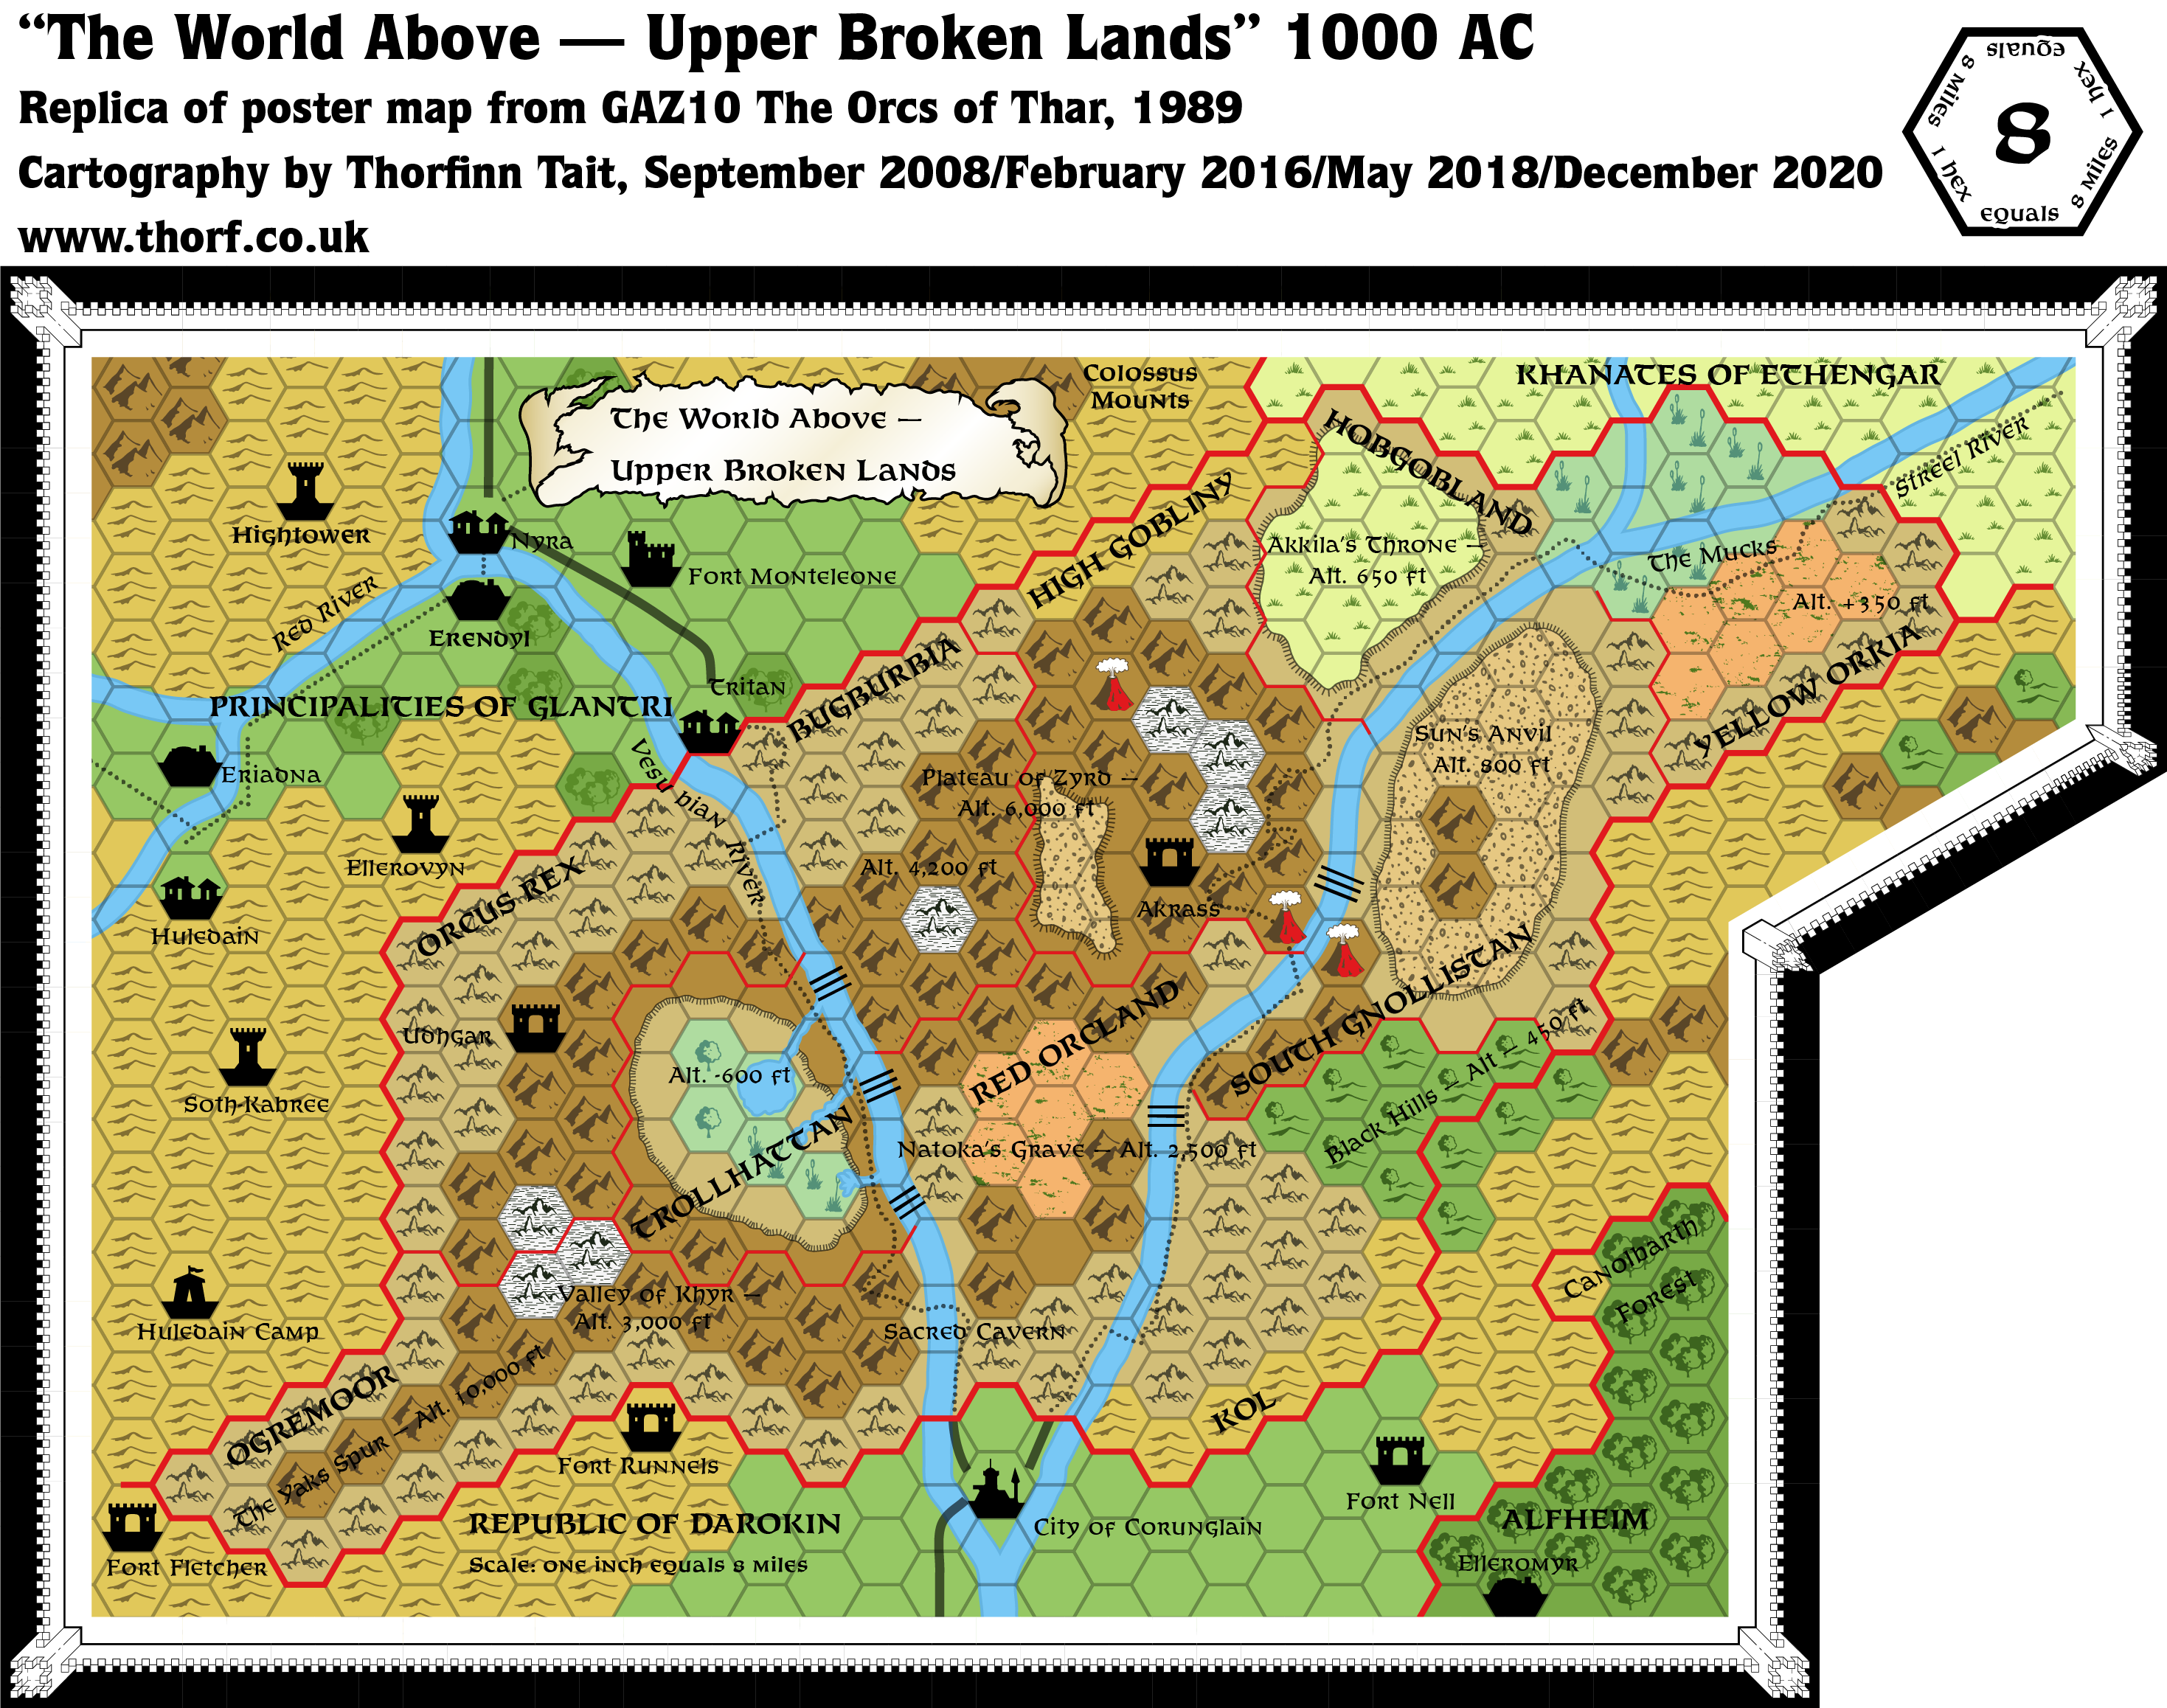 RPG no Paço: Mystara #01 - O Gran Ducado de Karameikos